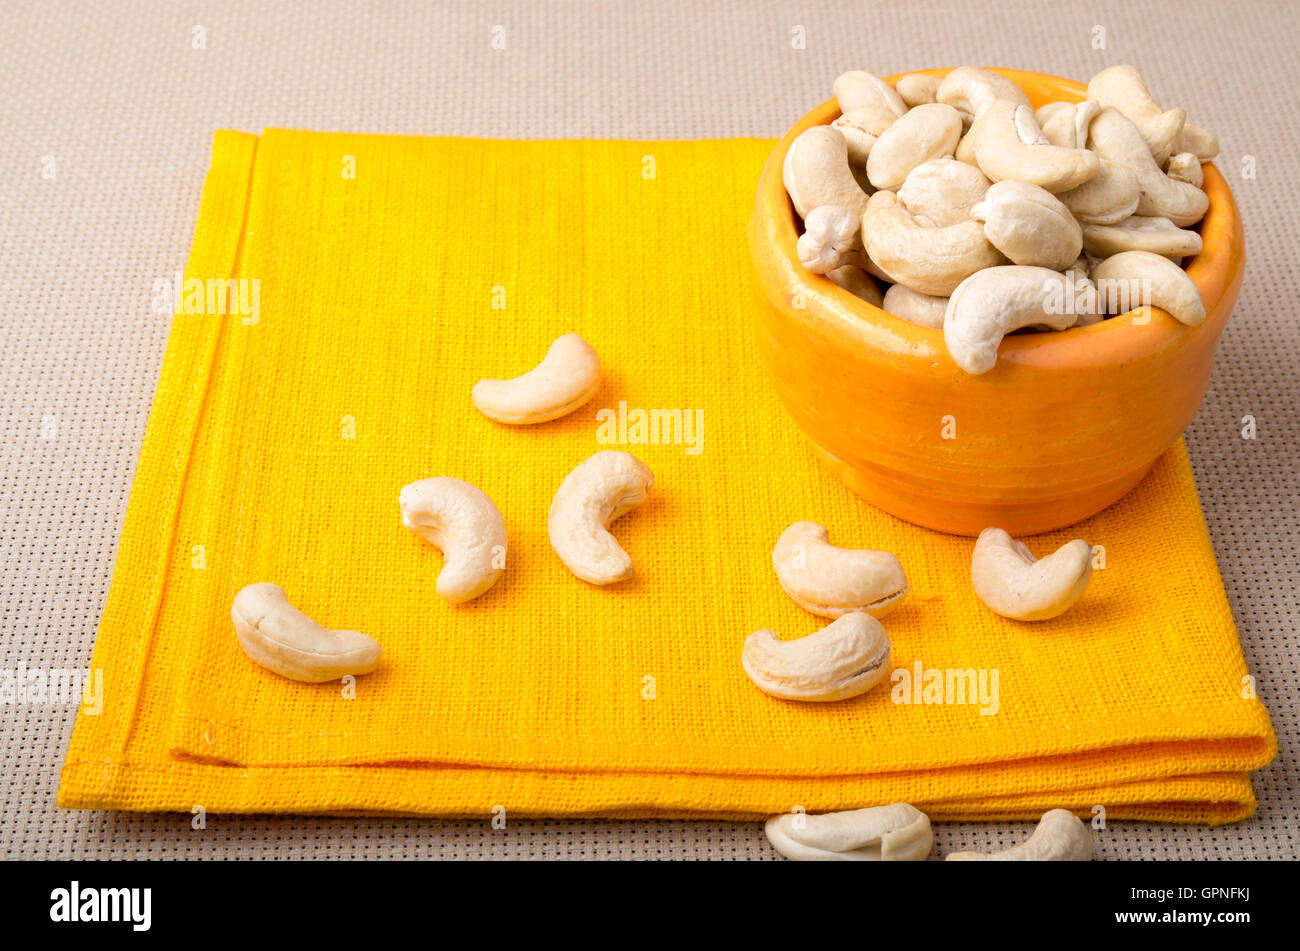 Une alimentation saine et naturelle pour les matières foodists - cajou dans une petite serviette orange orange cup le close-up. Selective focus Banque D'Images